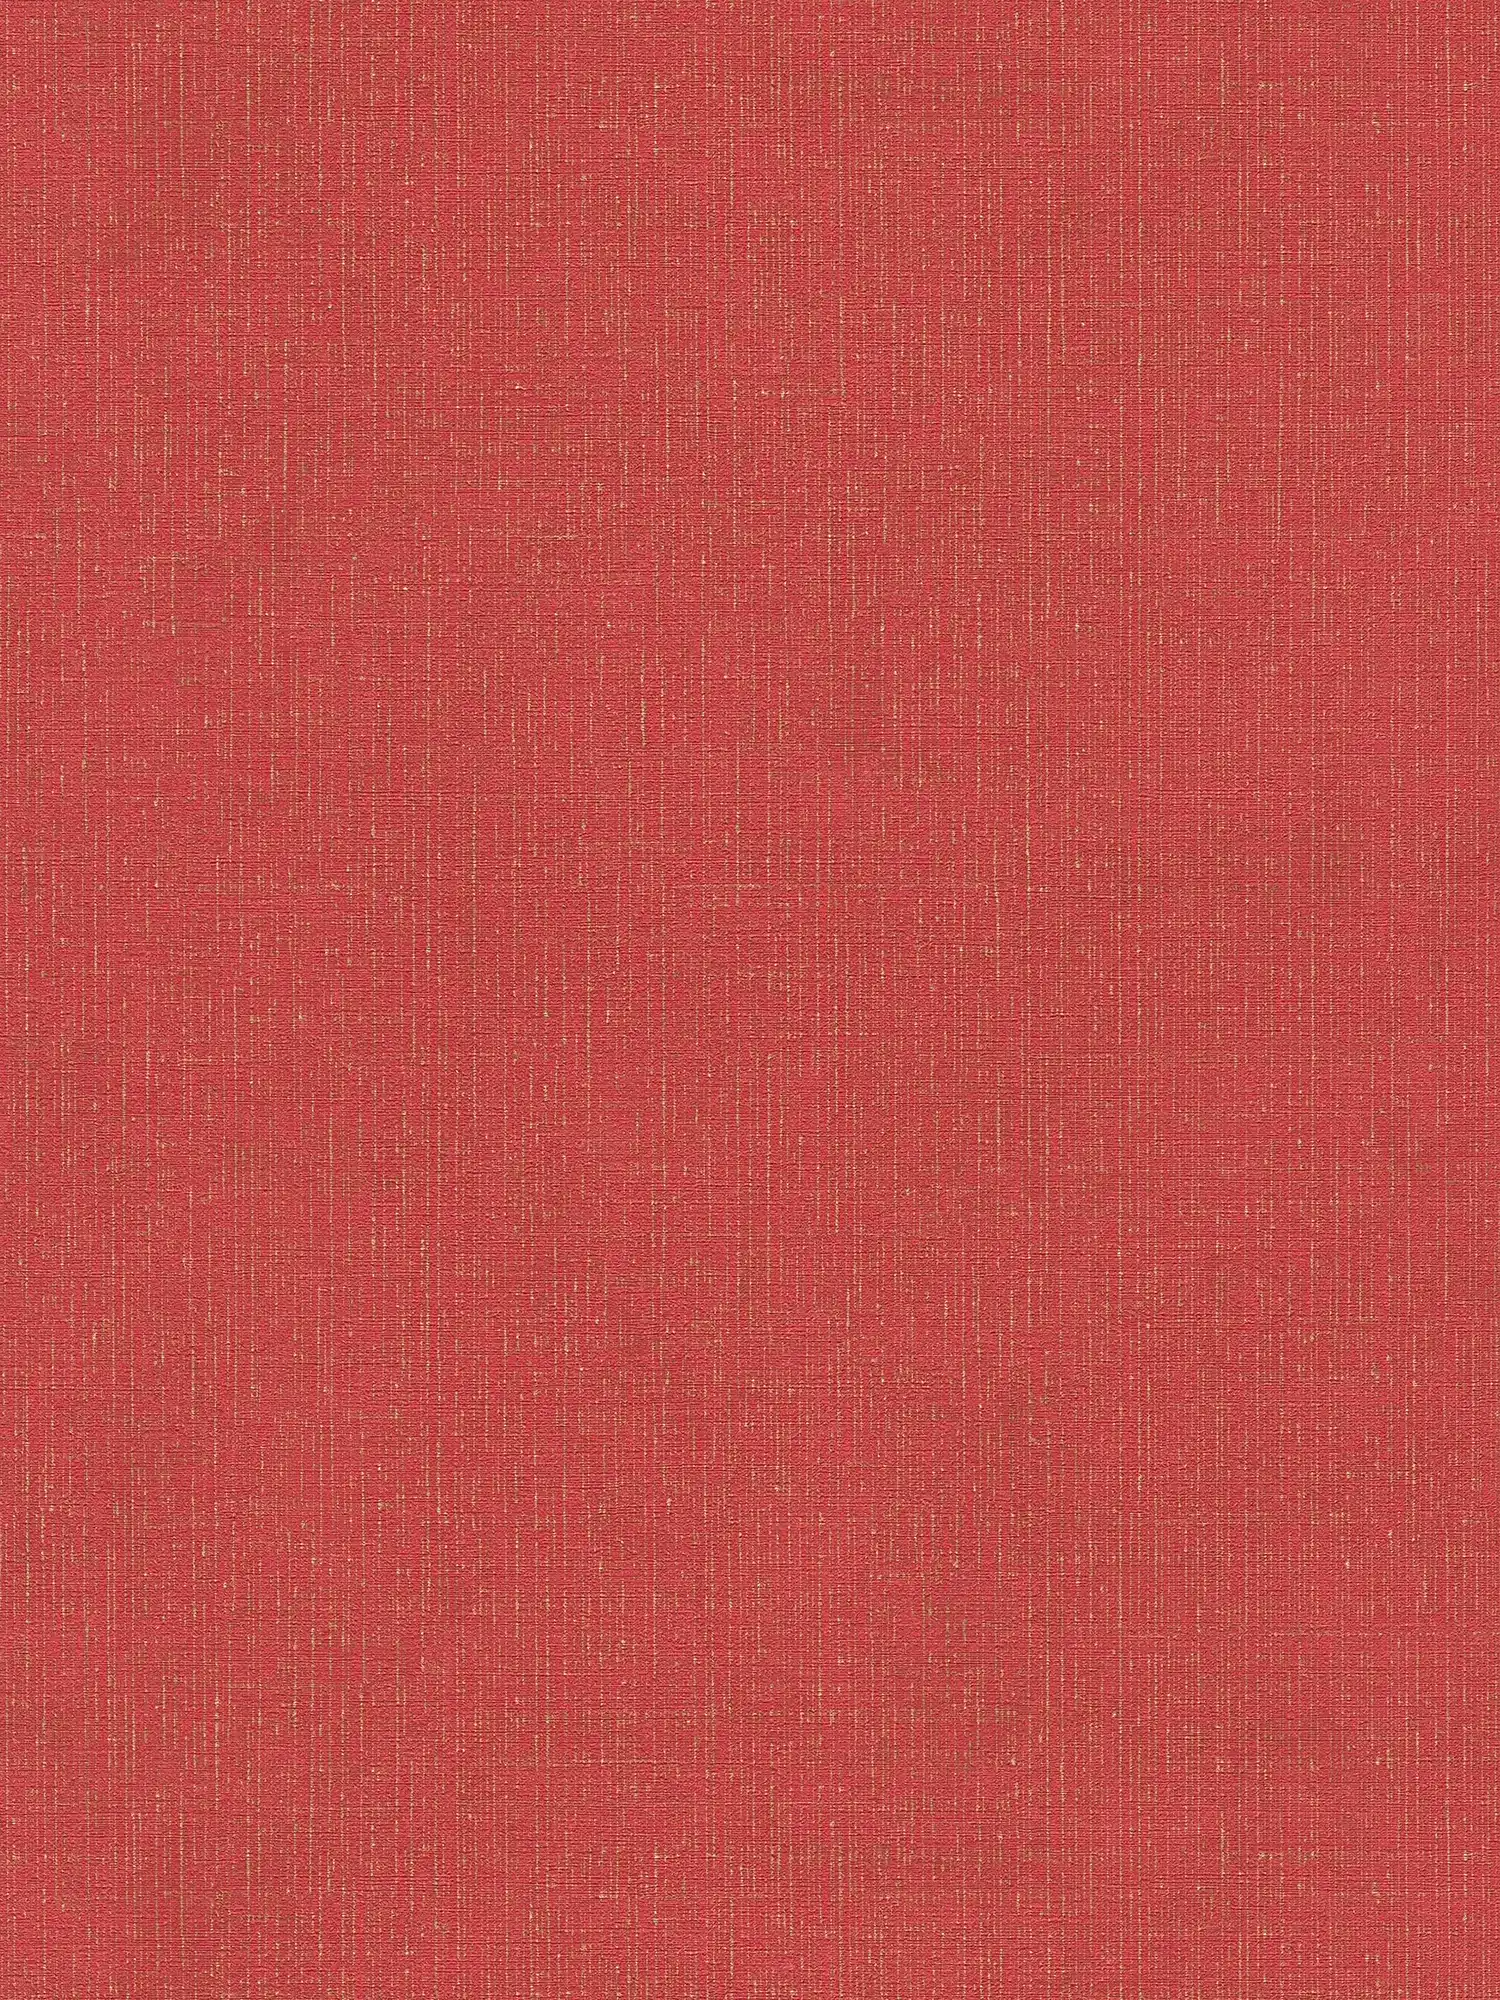 Papier peint rouge doré chiné avec aspect textile - métallique, rouge
